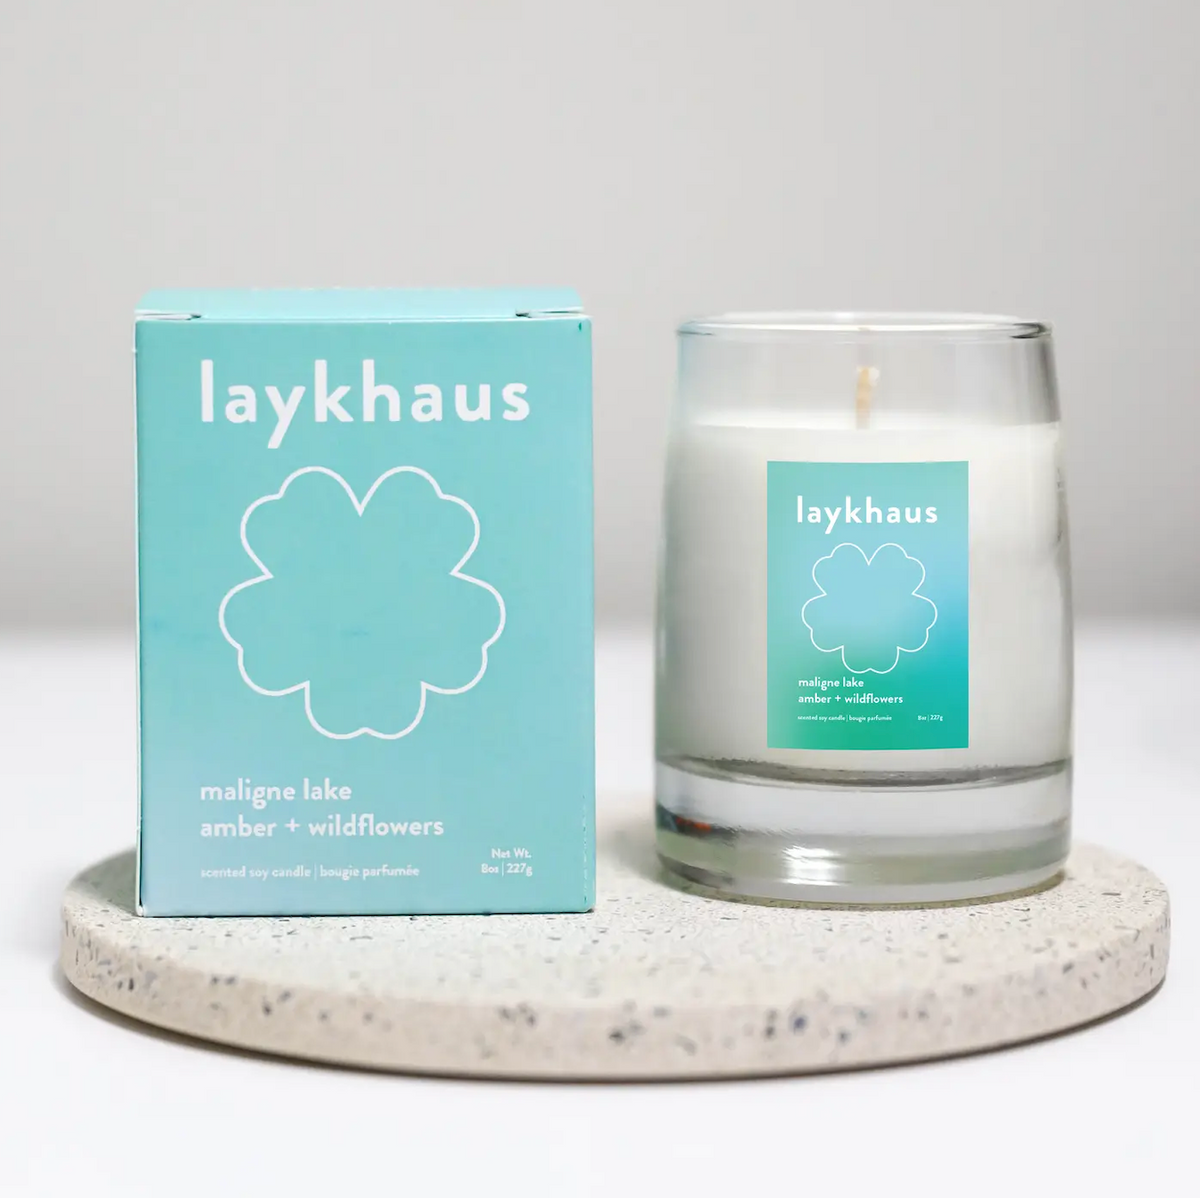 Laykhaus Candles